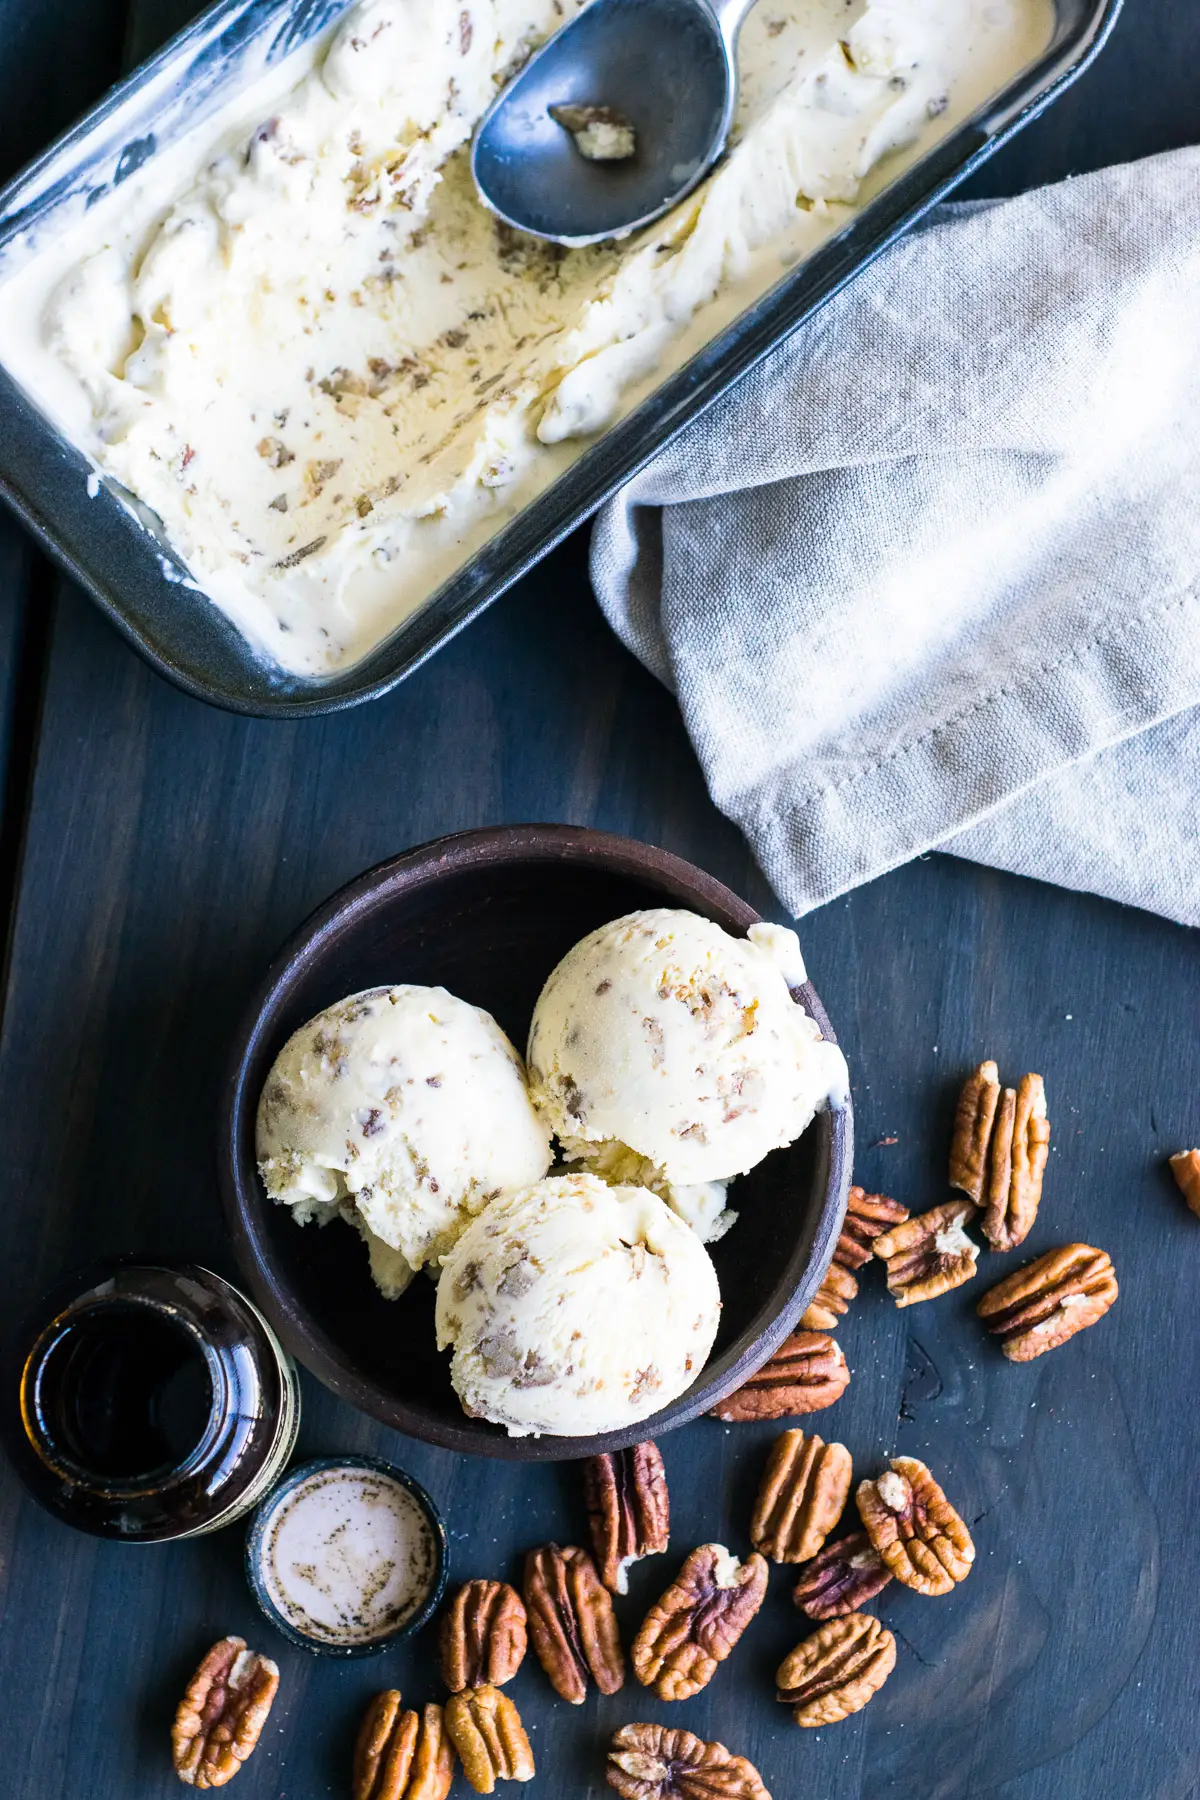 Butter Pecan Ice Cream Recipe